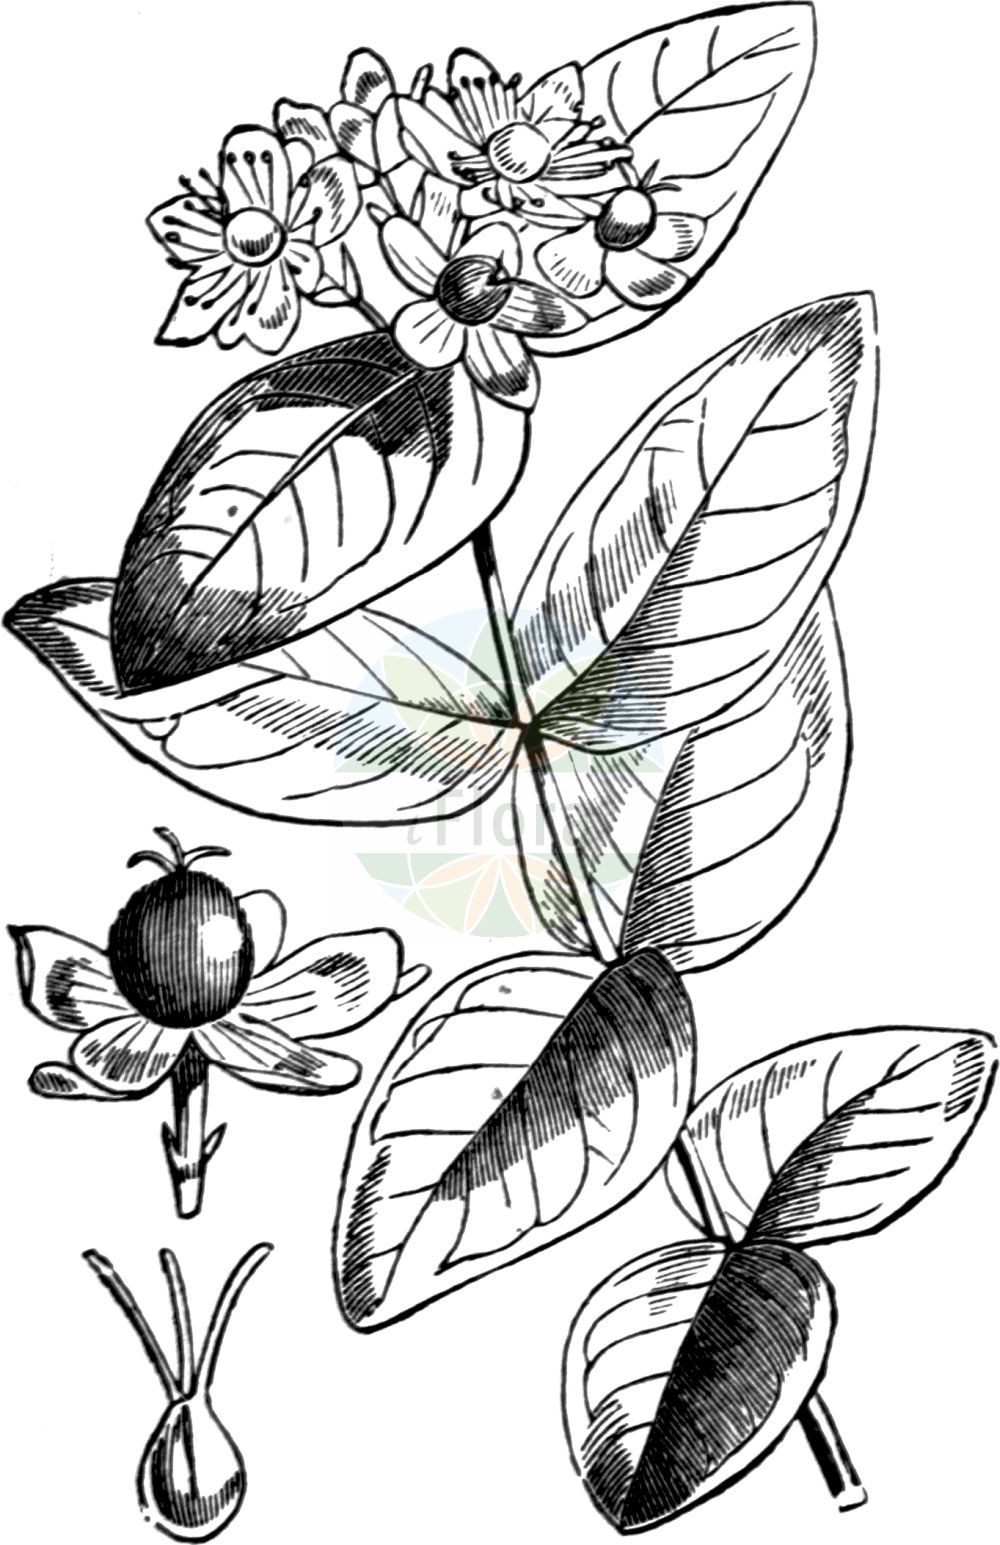 Historische Abbildung von Hypericum androsaemum (Tutsan). Das Bild zeigt Blatt, Bluete, Frucht und Same. ---- Historical Drawing of Hypericum androsaemum (Tutsan). The image is showing leaf, flower, fruit and seed.(Hypericum androsaemum,Tutsan,Androsaemum officinale,Hypericum androsaemum,Hypericum,Johanniskraut,St. John's Wort,Hypericaceae,Hartheugewächse,St. John's Wort family,Blatt,Bluete,Frucht,Same,leaf,flower,fruit,seed,Fitch et al. (1880))